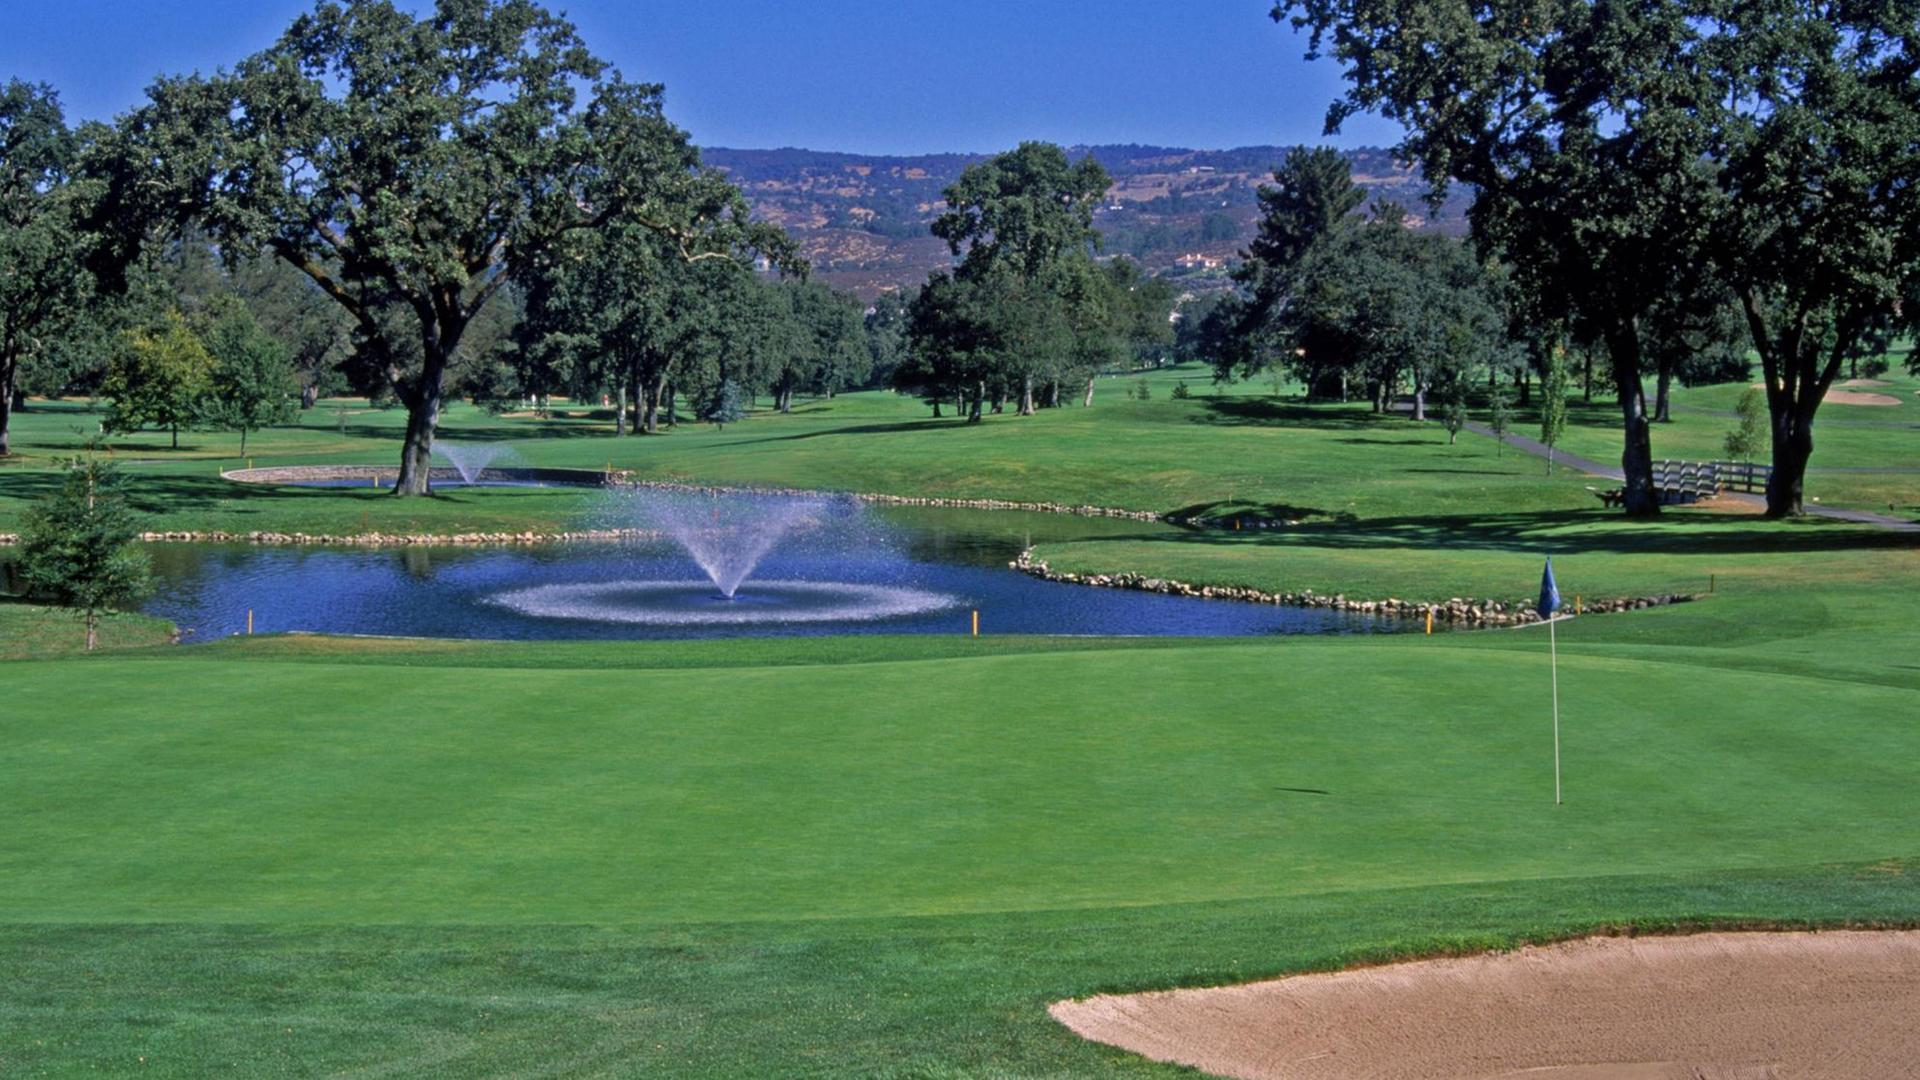 Blick auf das Golfresort Silverado Country Club & Resort in Napa, Kalifornien.